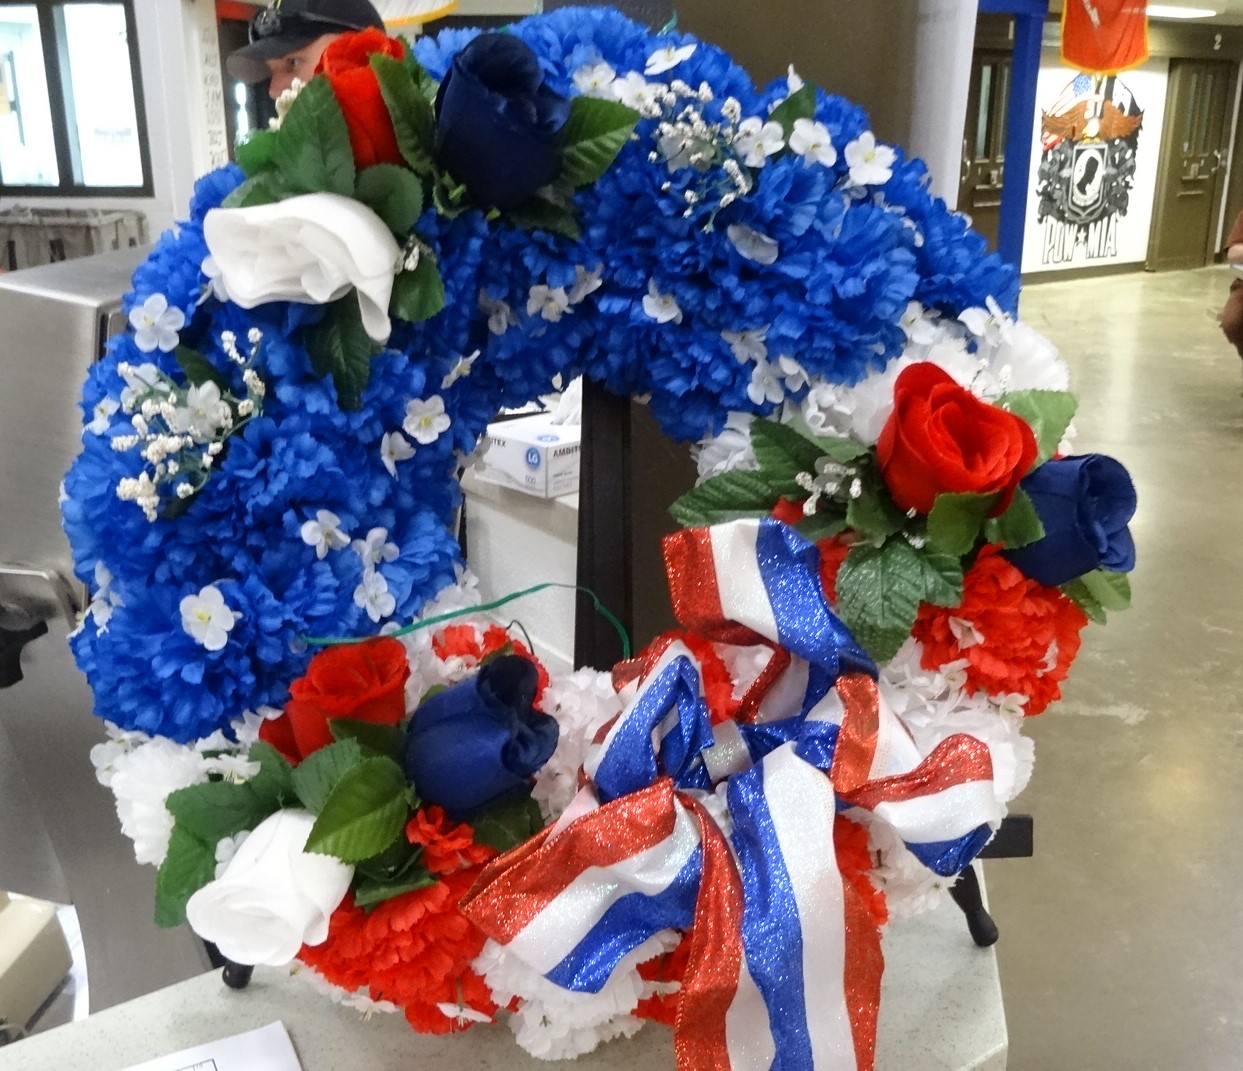 A patriotic wreath